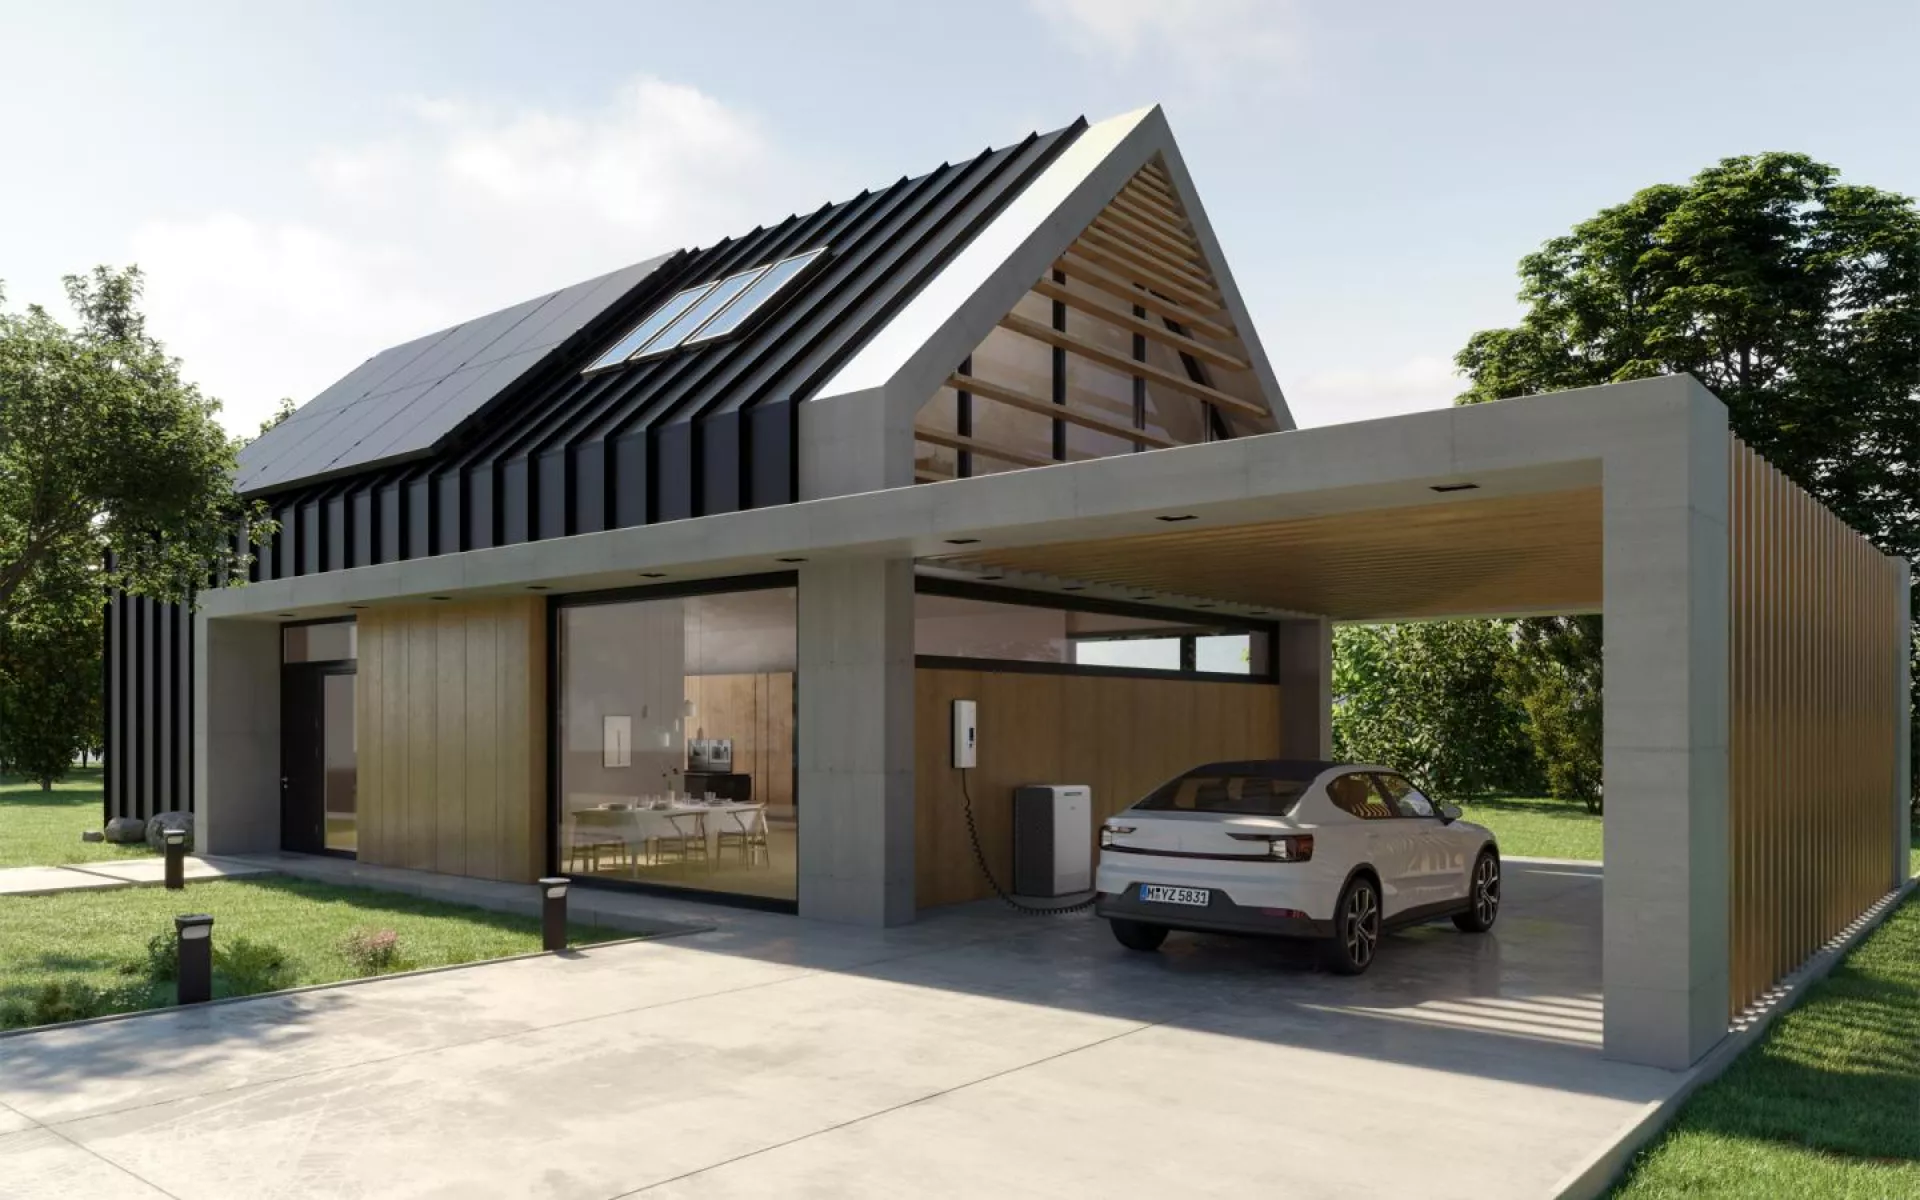 Ein modernes Haus mit Solaranlage auf dem Dach, einem Carport mit einem E-Auto und einer Ladestation plus Strom-Cloud zum Tanken unterwegs.